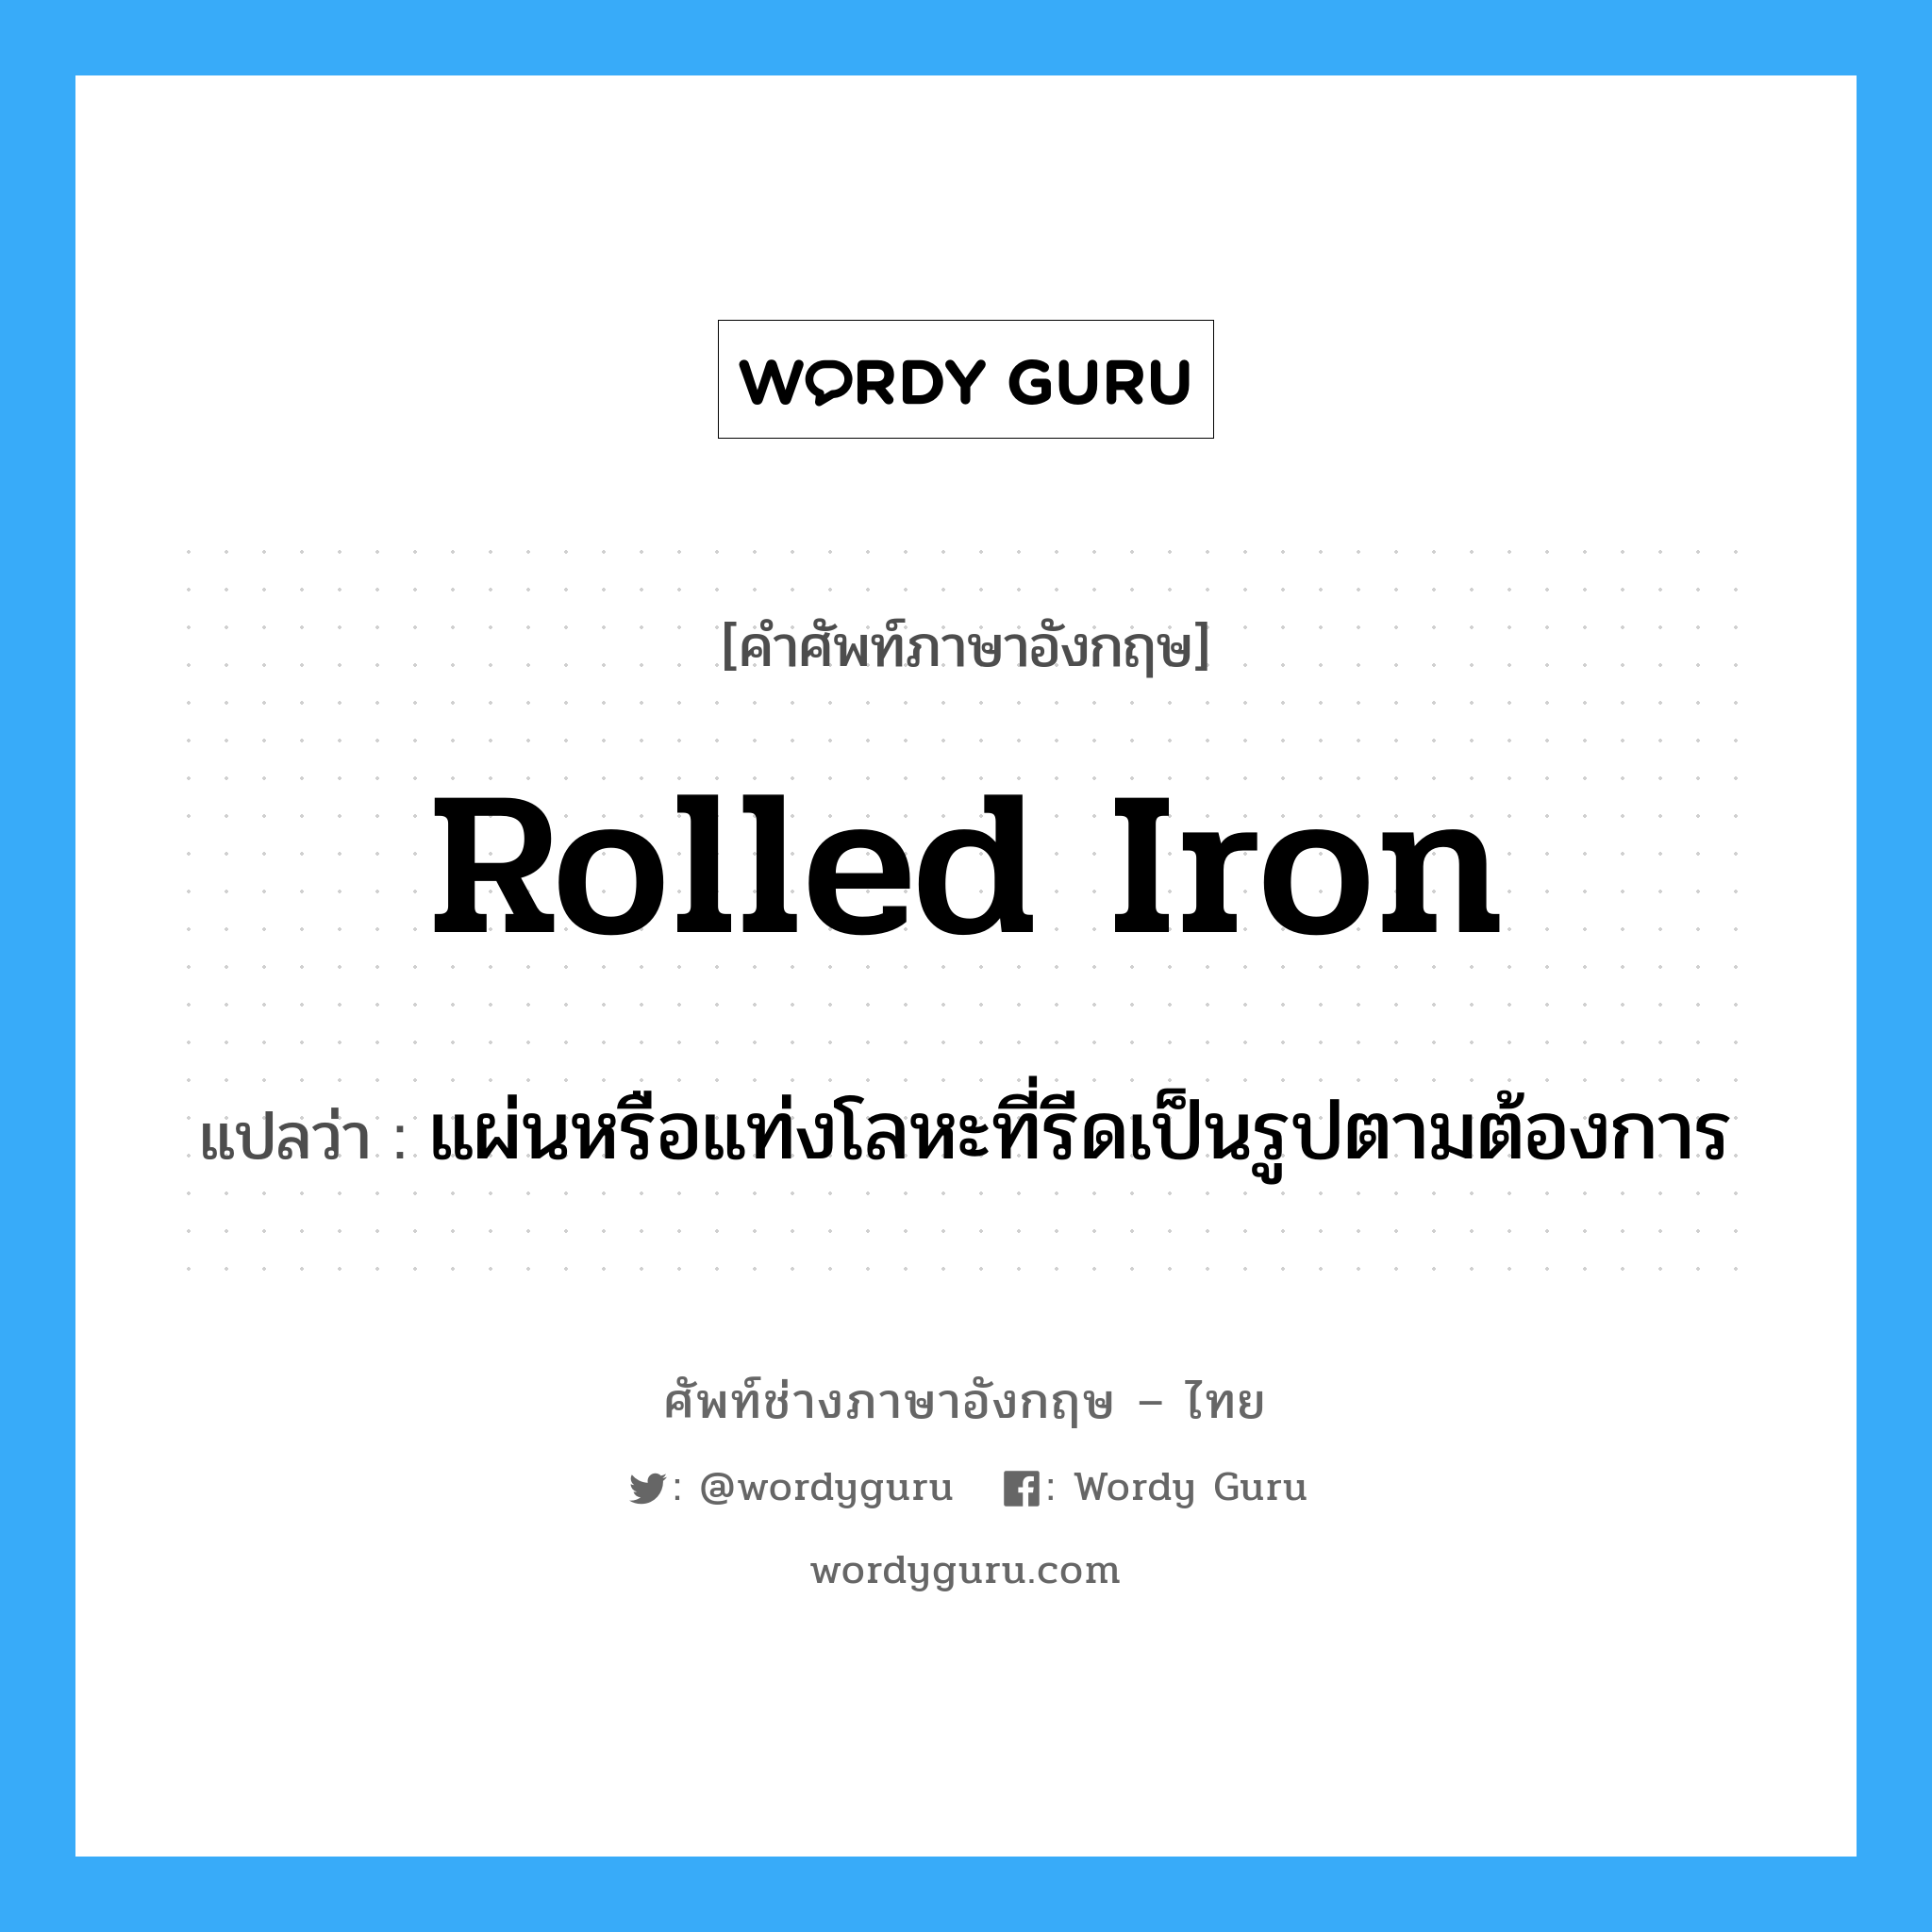 แผ่นหรือแท่งโลหะที่รีดเป็นรูปตามต้องการ ภาษาอังกฤษ?, คำศัพท์ช่างภาษาอังกฤษ - ไทย แผ่นหรือแท่งโลหะที่รีดเป็นรูปตามต้องการ คำศัพท์ภาษาอังกฤษ แผ่นหรือแท่งโลหะที่รีดเป็นรูปตามต้องการ แปลว่า rolled iron